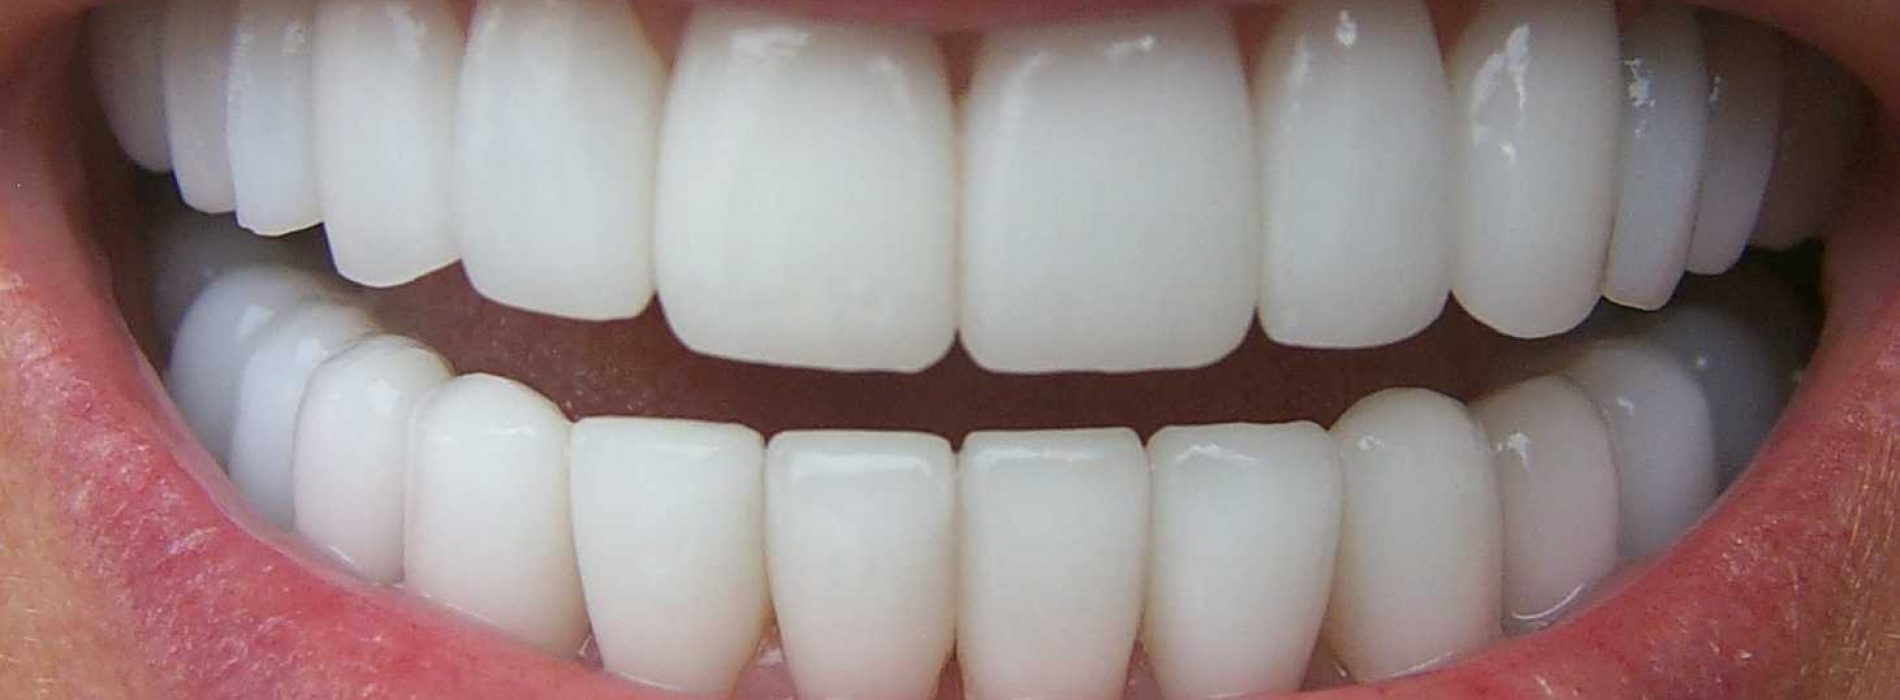 Ontdek 4 natuurlijke manieren om gingivitis en tandplak te bestrijden